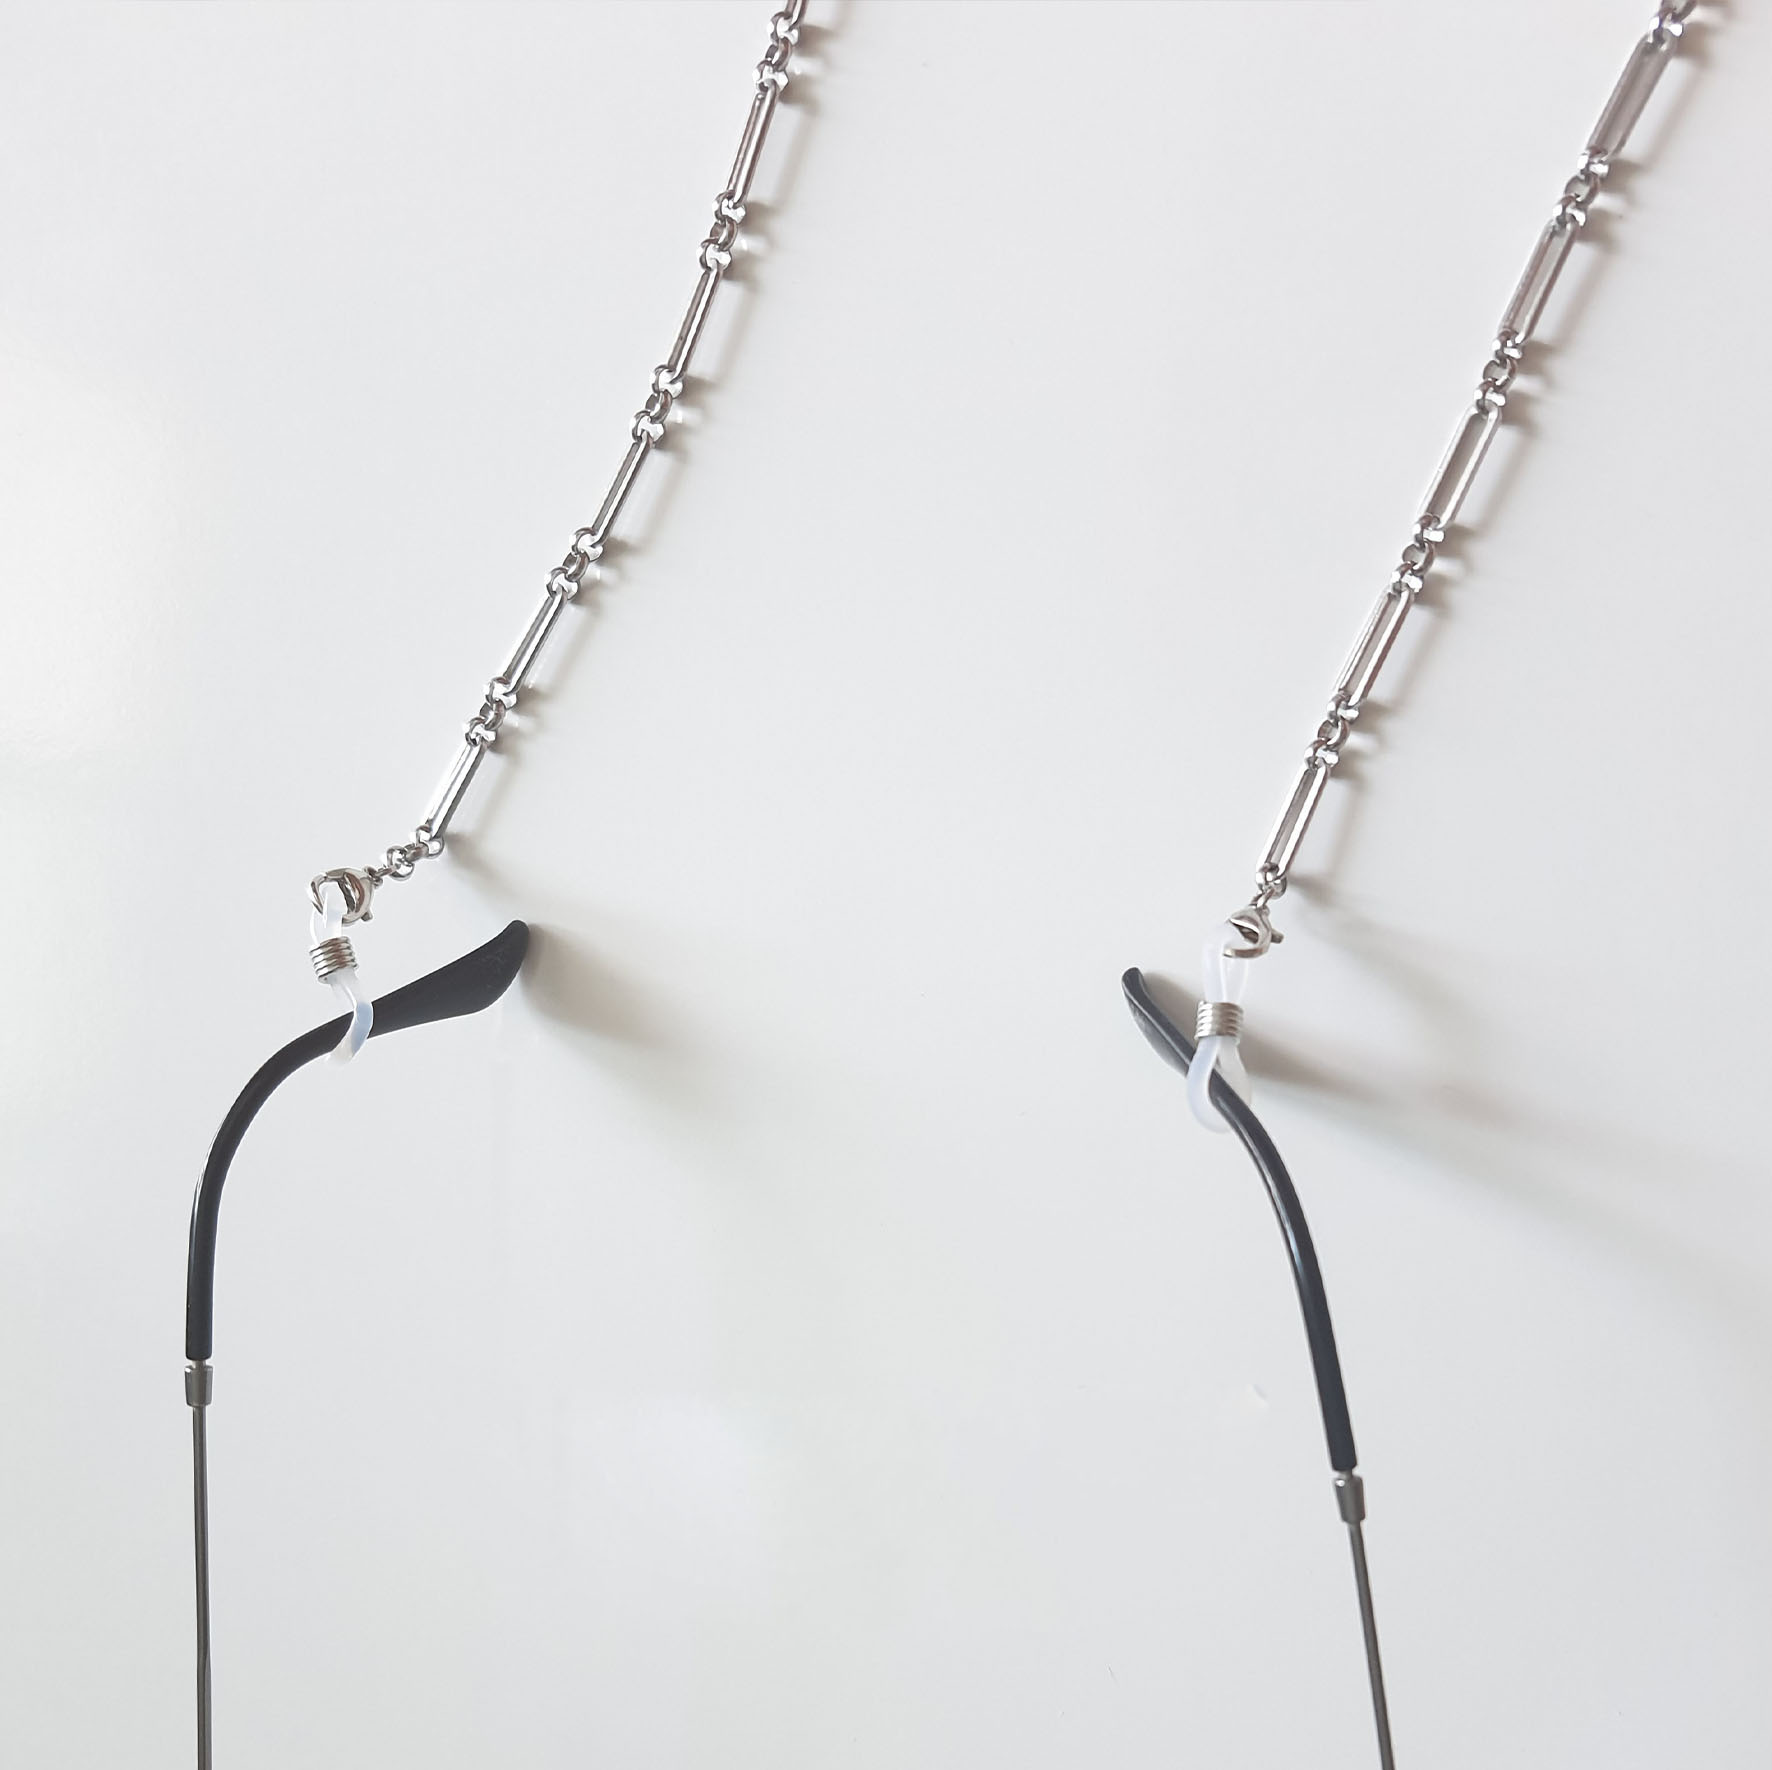 Glassess chain dây đeo gọng kính kim loại phụ kiện kính hot trend